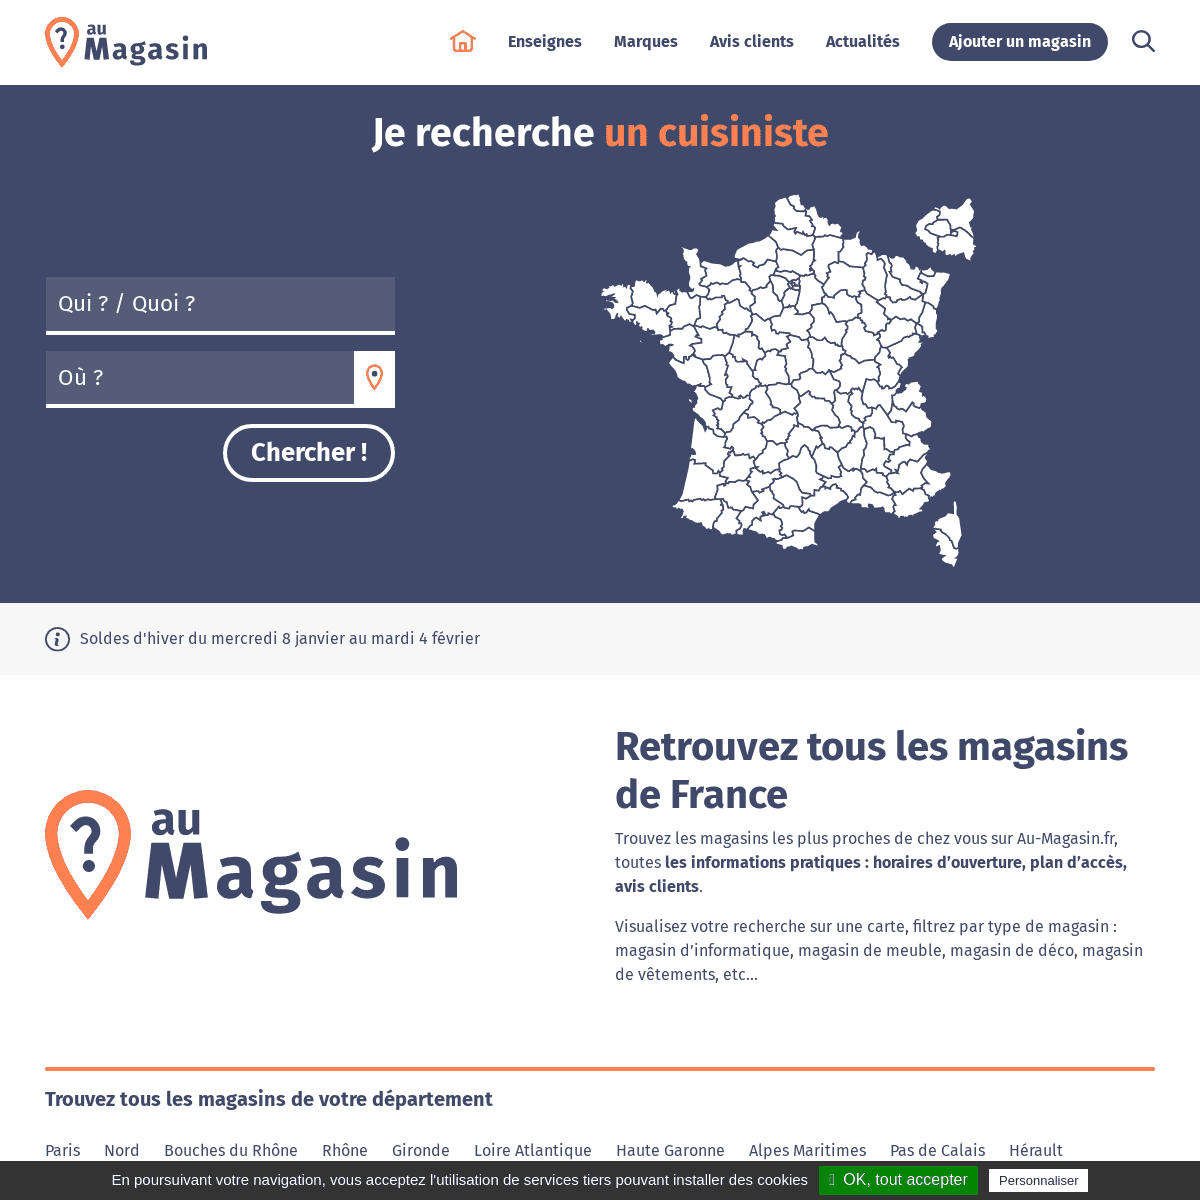 A complete backup of au-magasin.fr